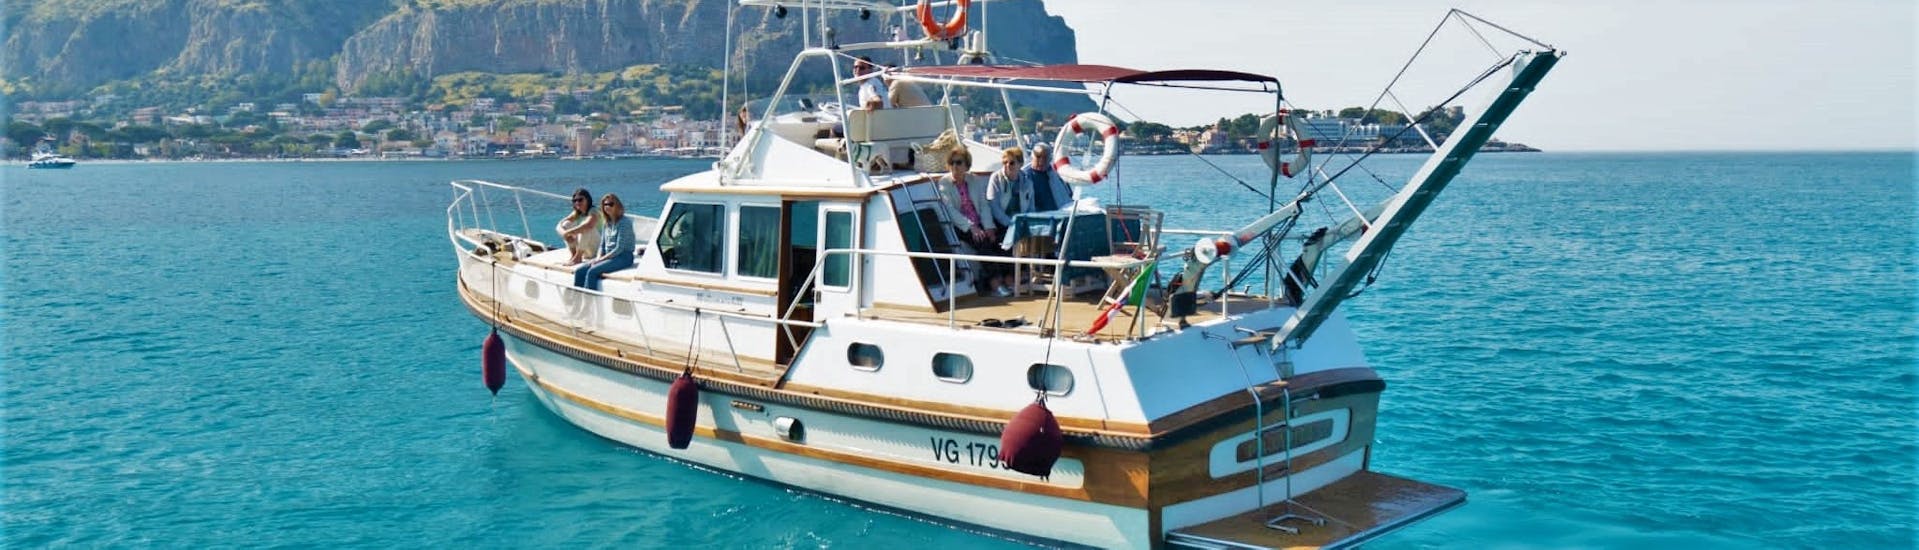 El barco utilizado por Seica Boat durante la excursión en barco desde Palermo a la playa de Mondello con aperitivo.